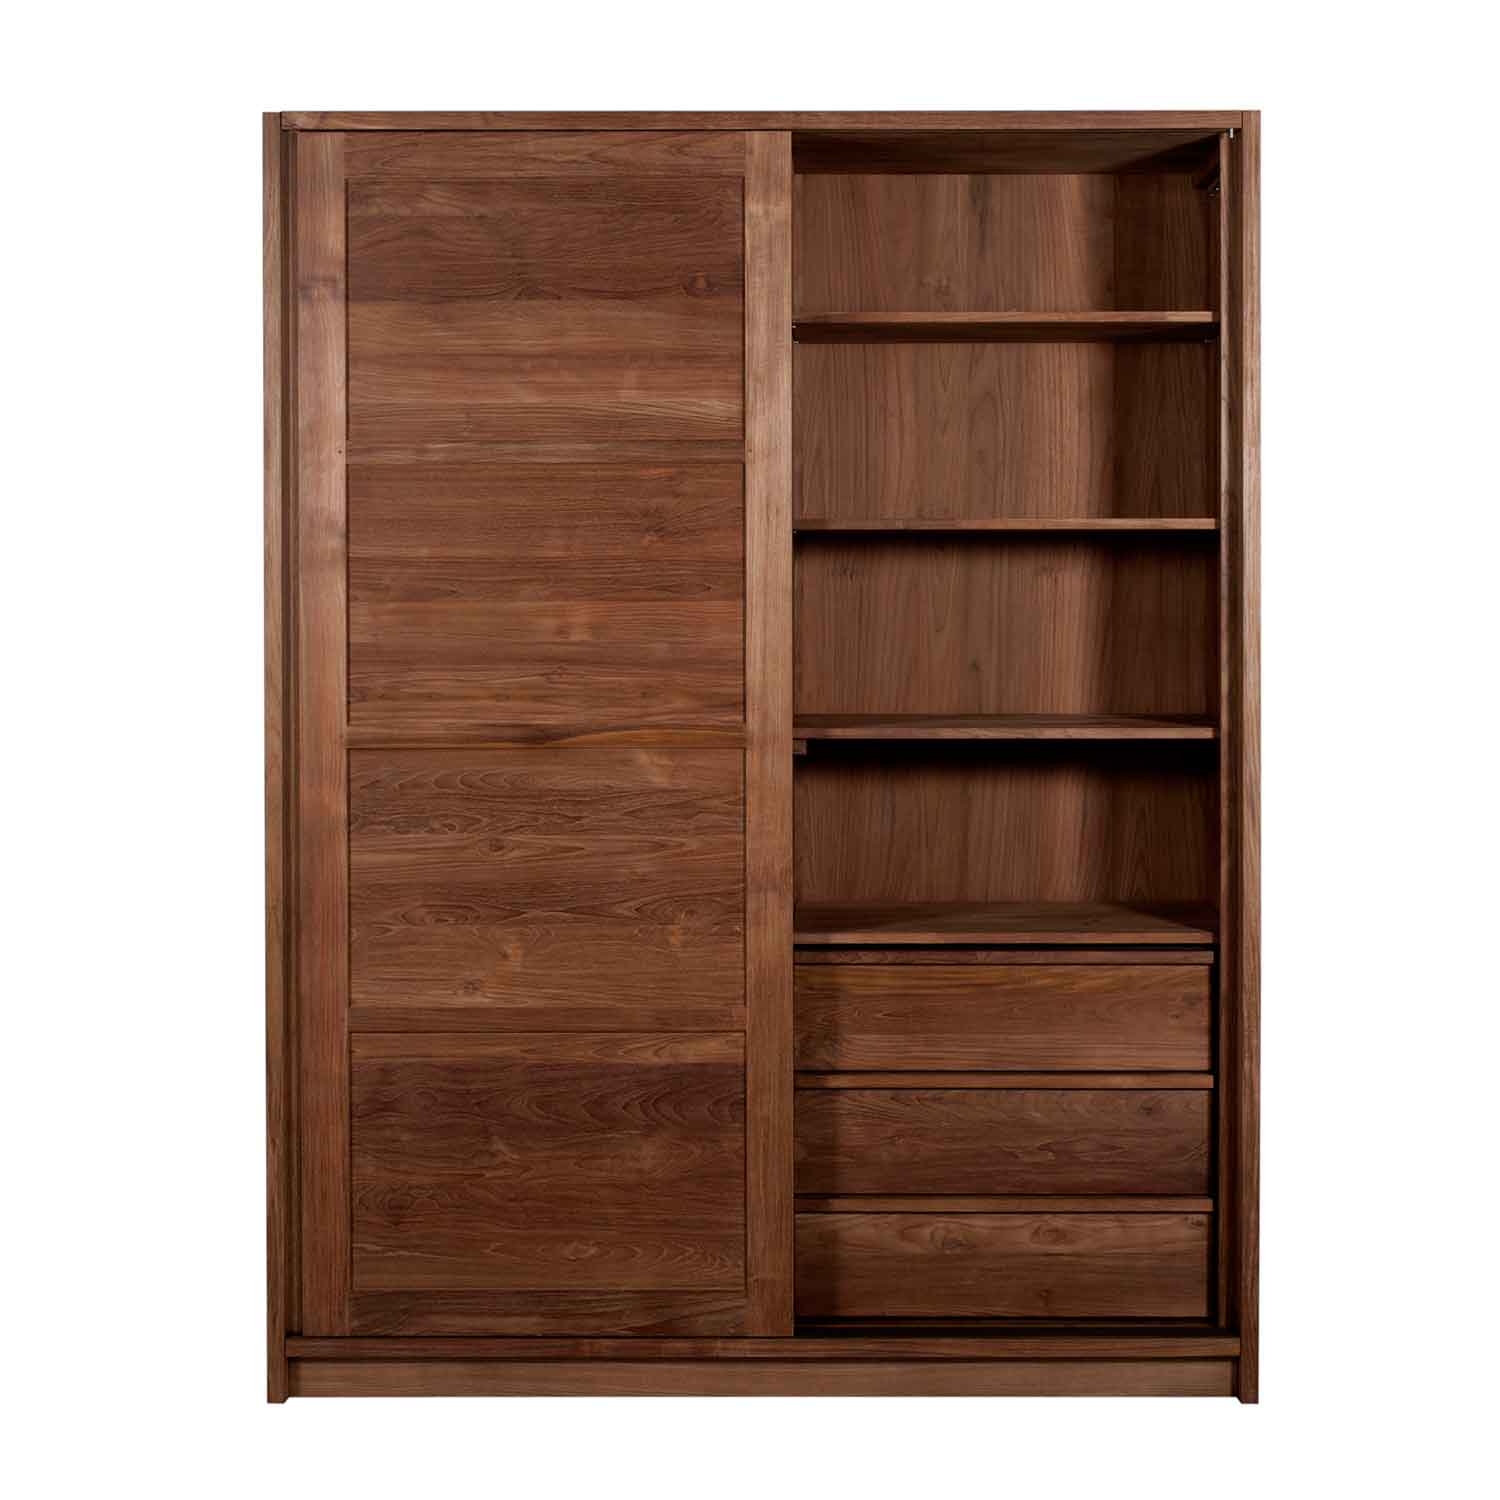 Teak wood wardrobe| Teak wardrobe| teak wardrobe furniture|teak furniture in pj